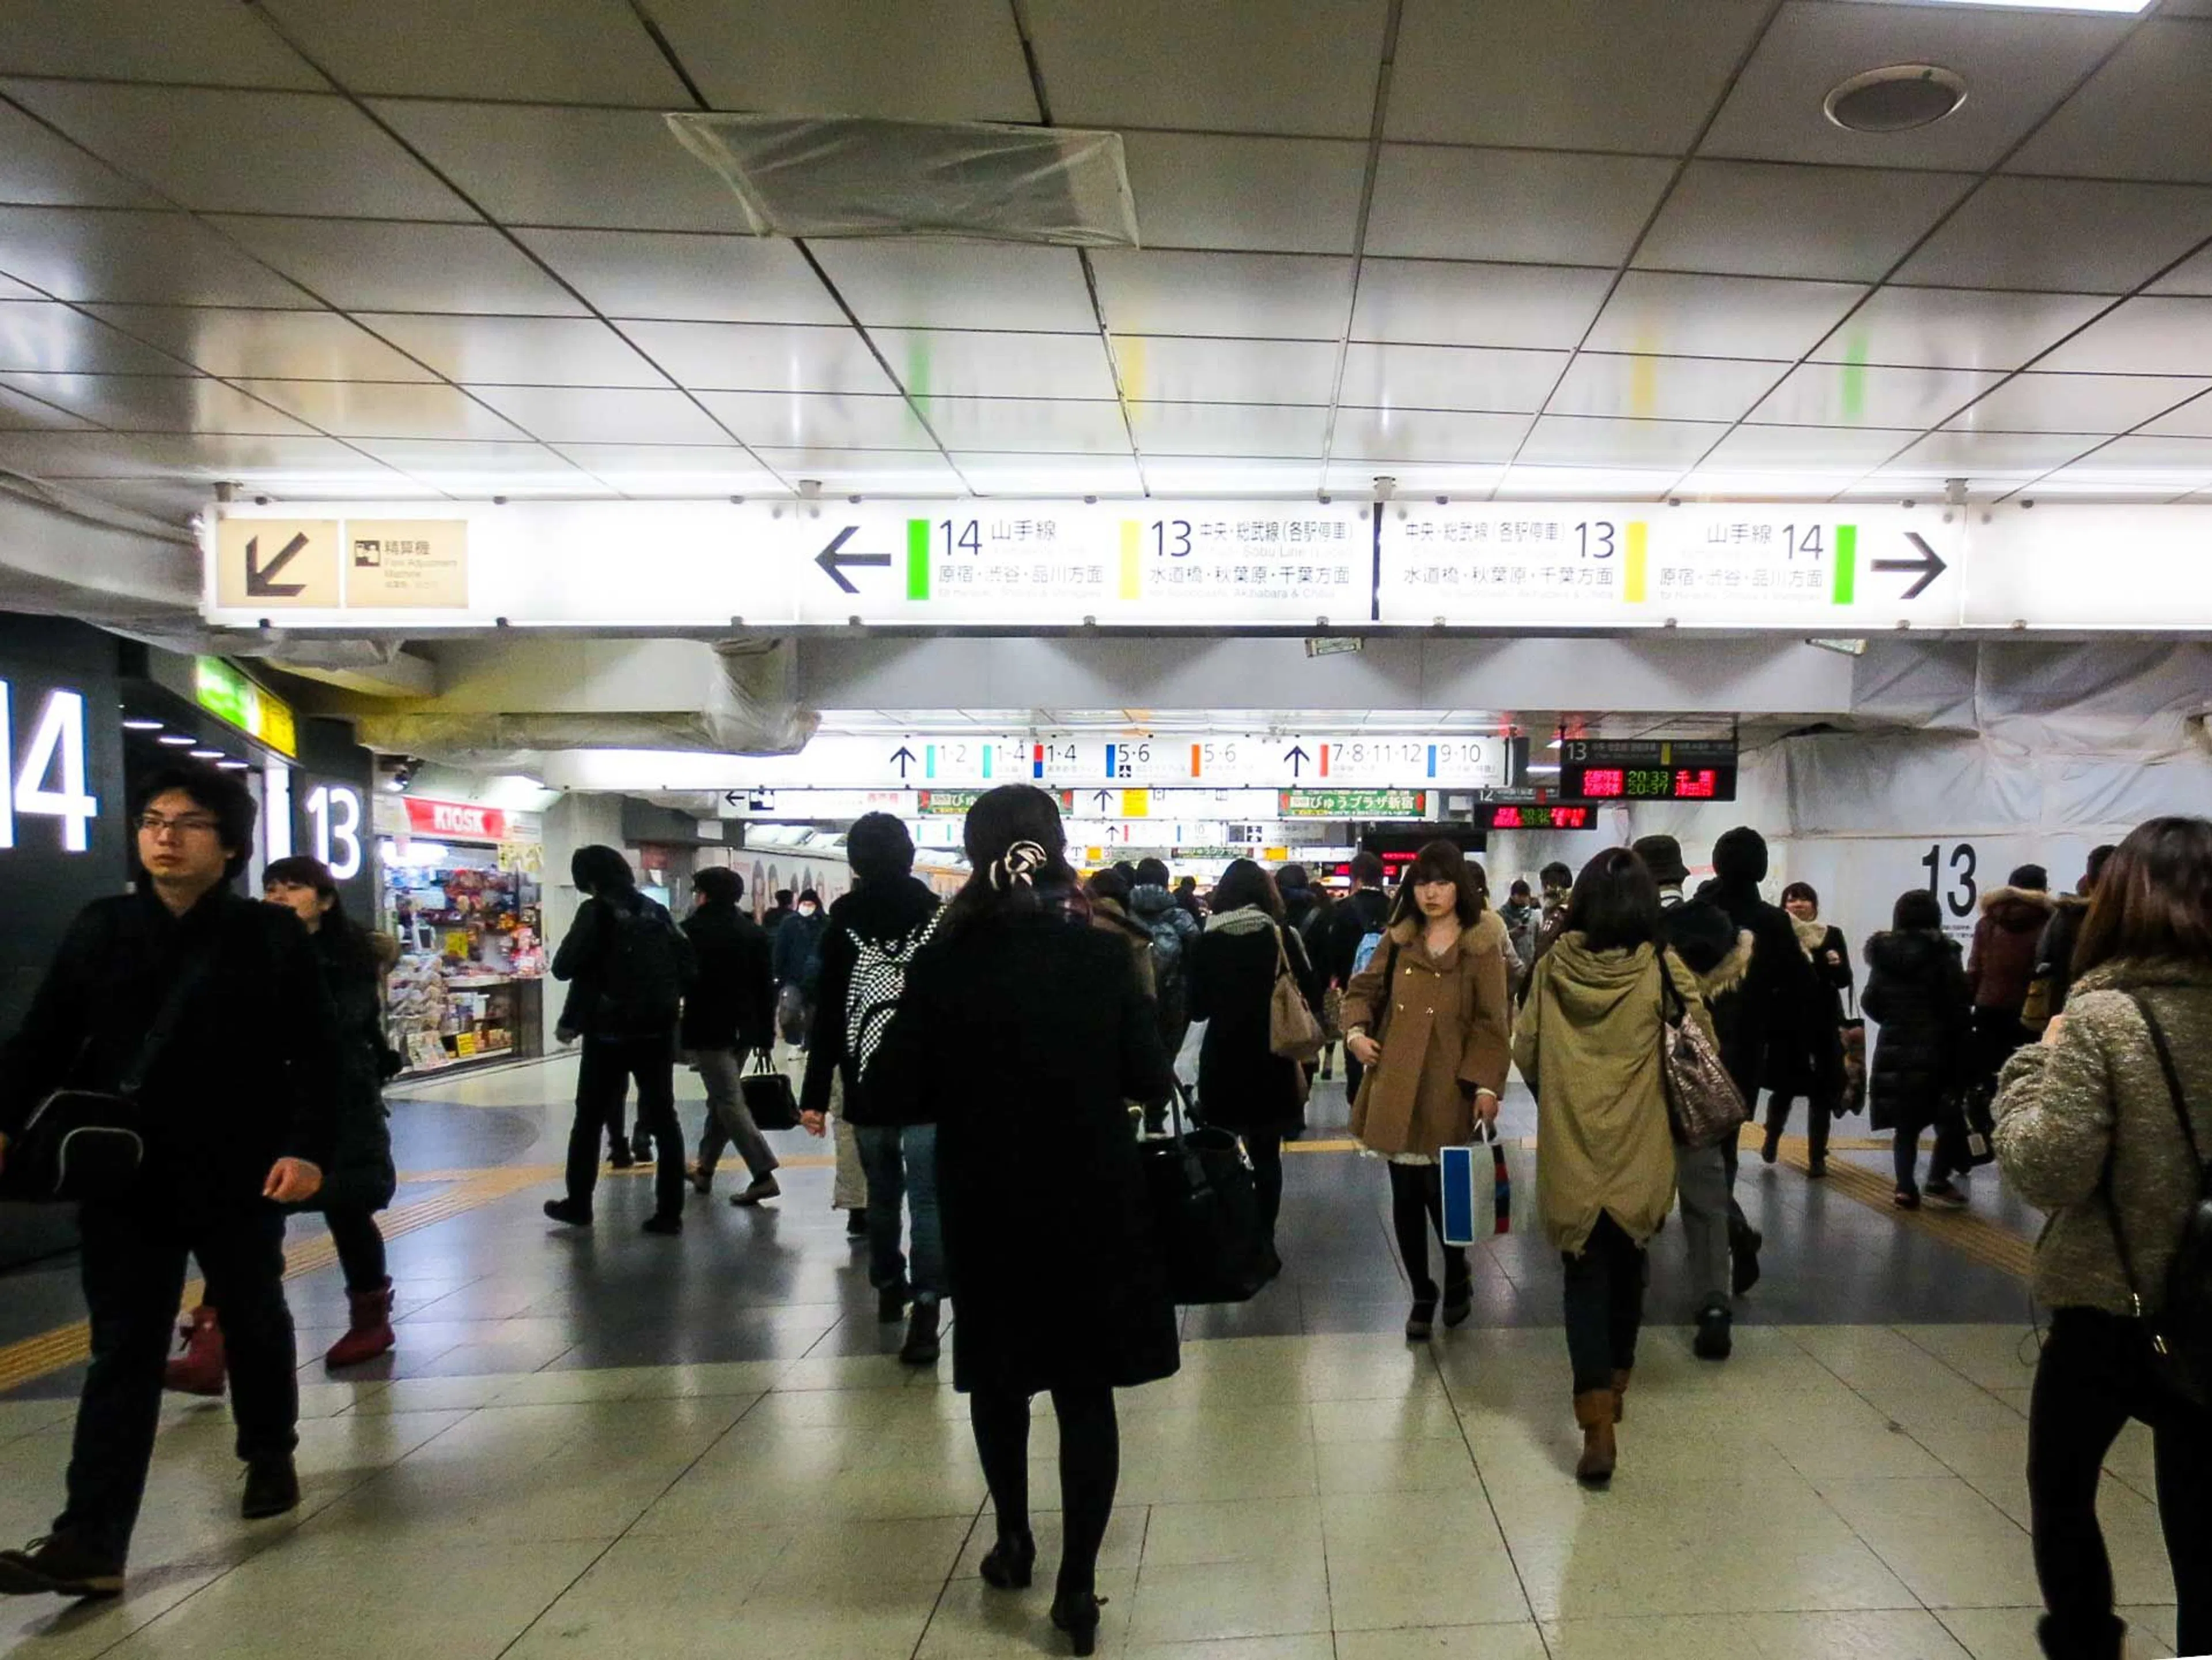 Walking through the interior of Shinjuku Station, JR side